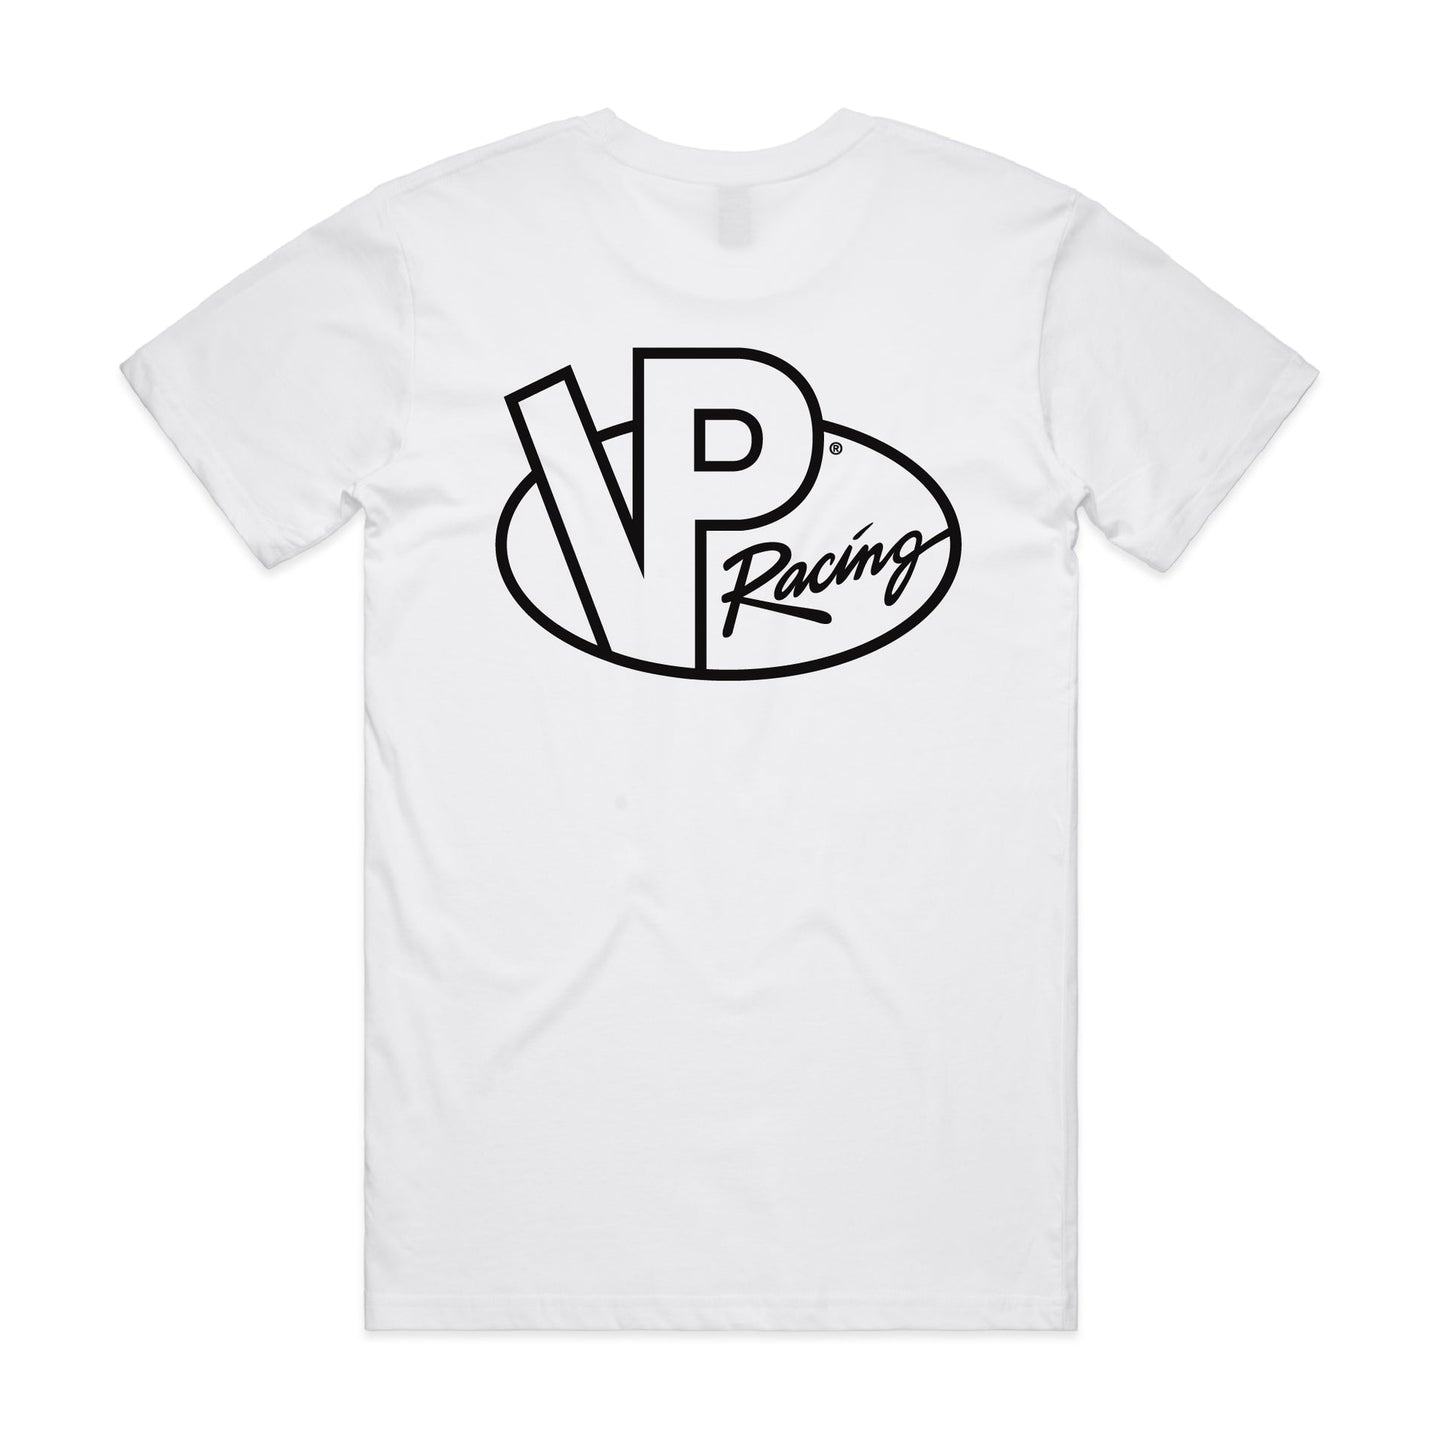 VP Racing Logo Shirt